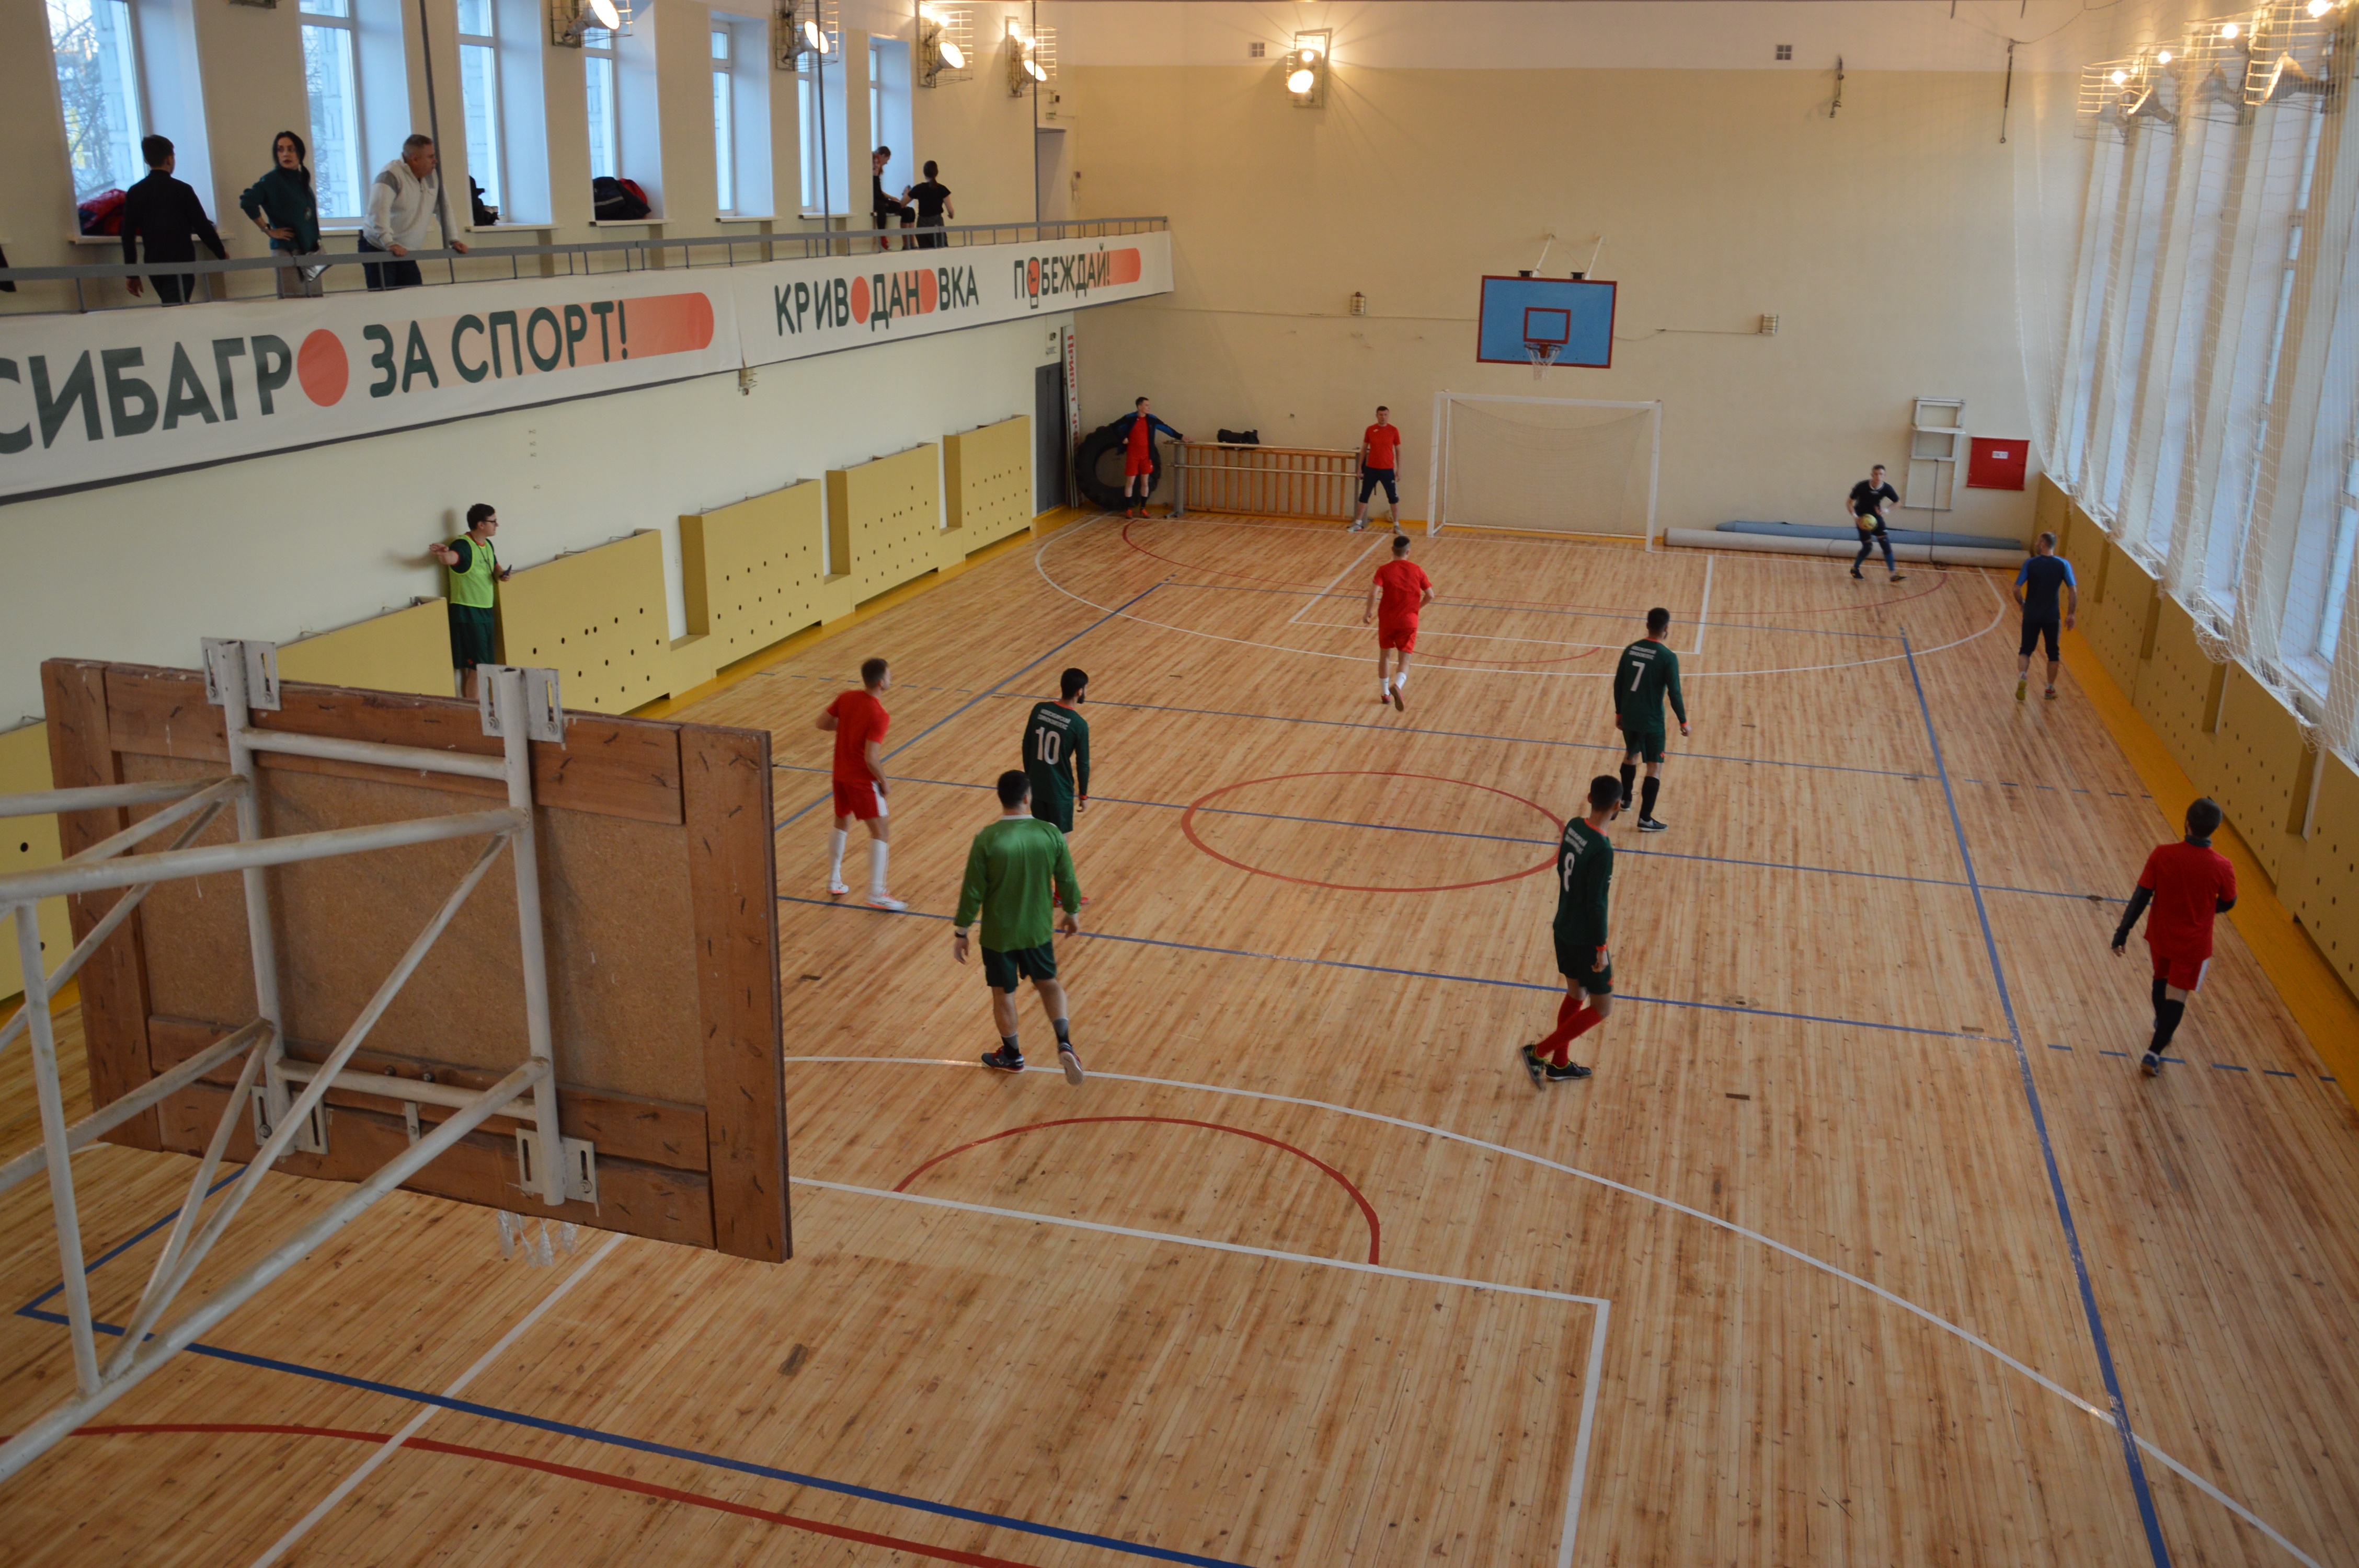 Компания «Сибагро» отремонтировала спортзал в Криводановке 